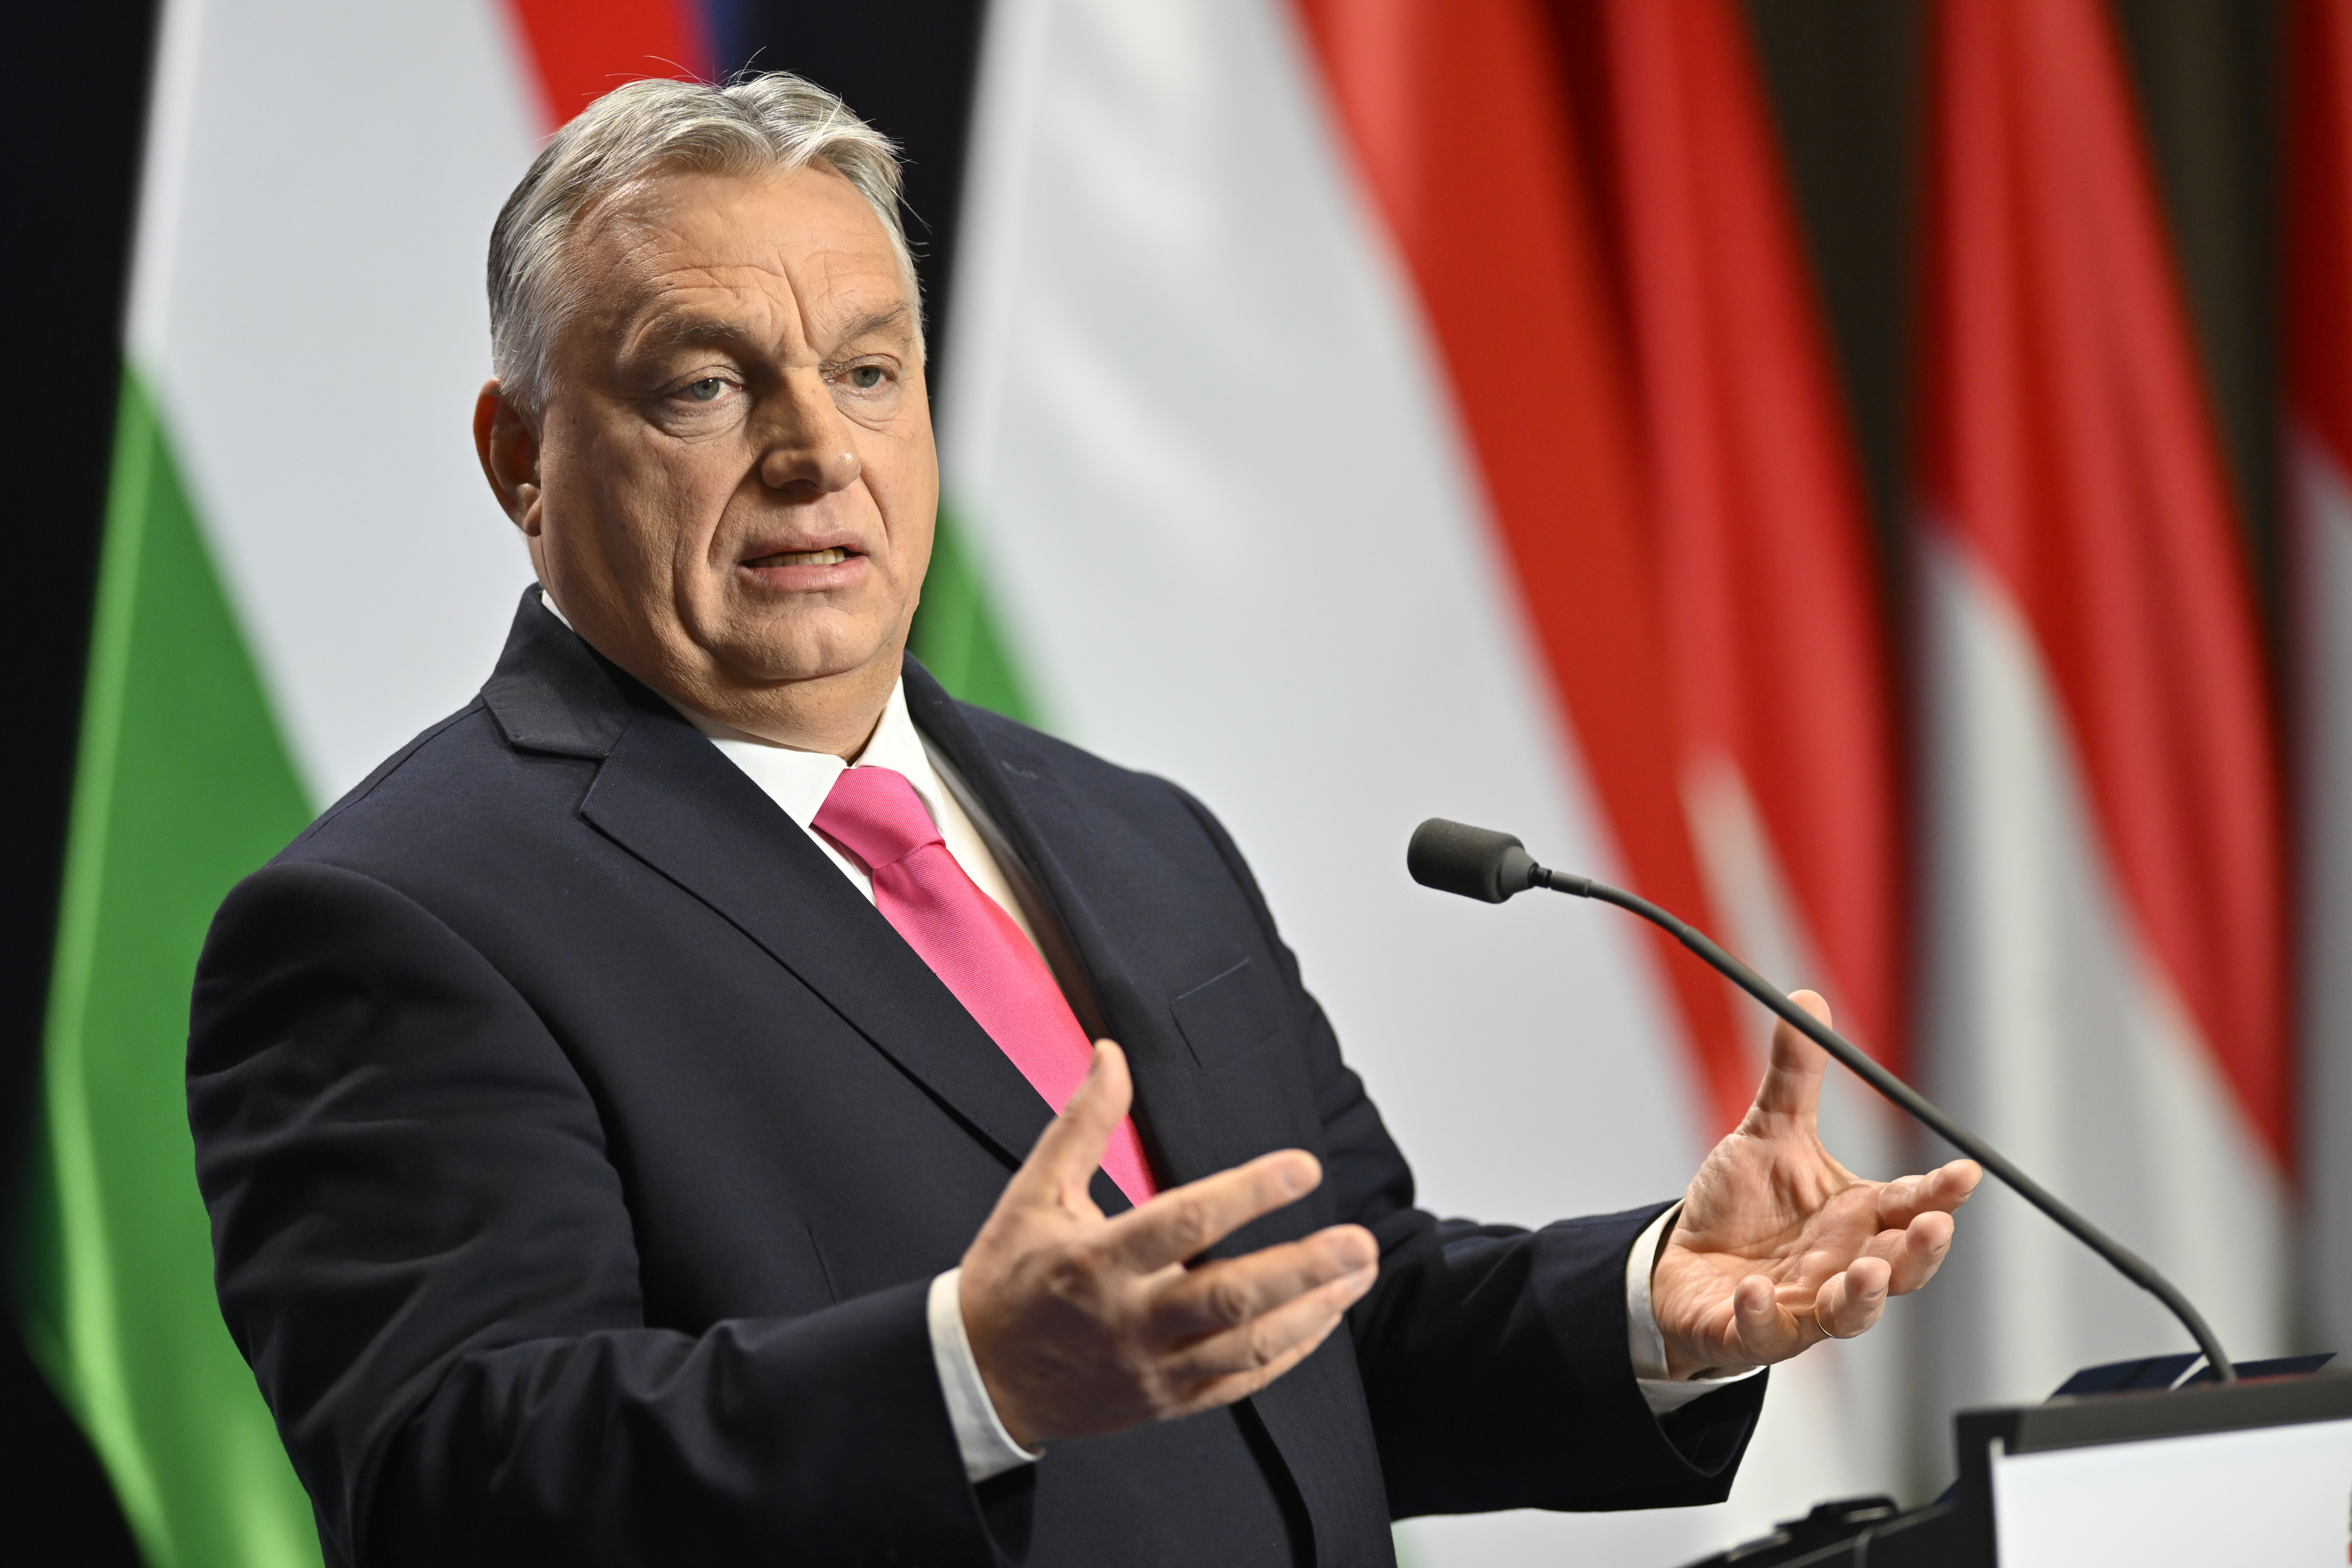 USA a Európska únia kŕmia vojnu, vyhlásil Orbán v súvislosti s umožnením Ukrajine použiť západné zbrane na ruské ciele